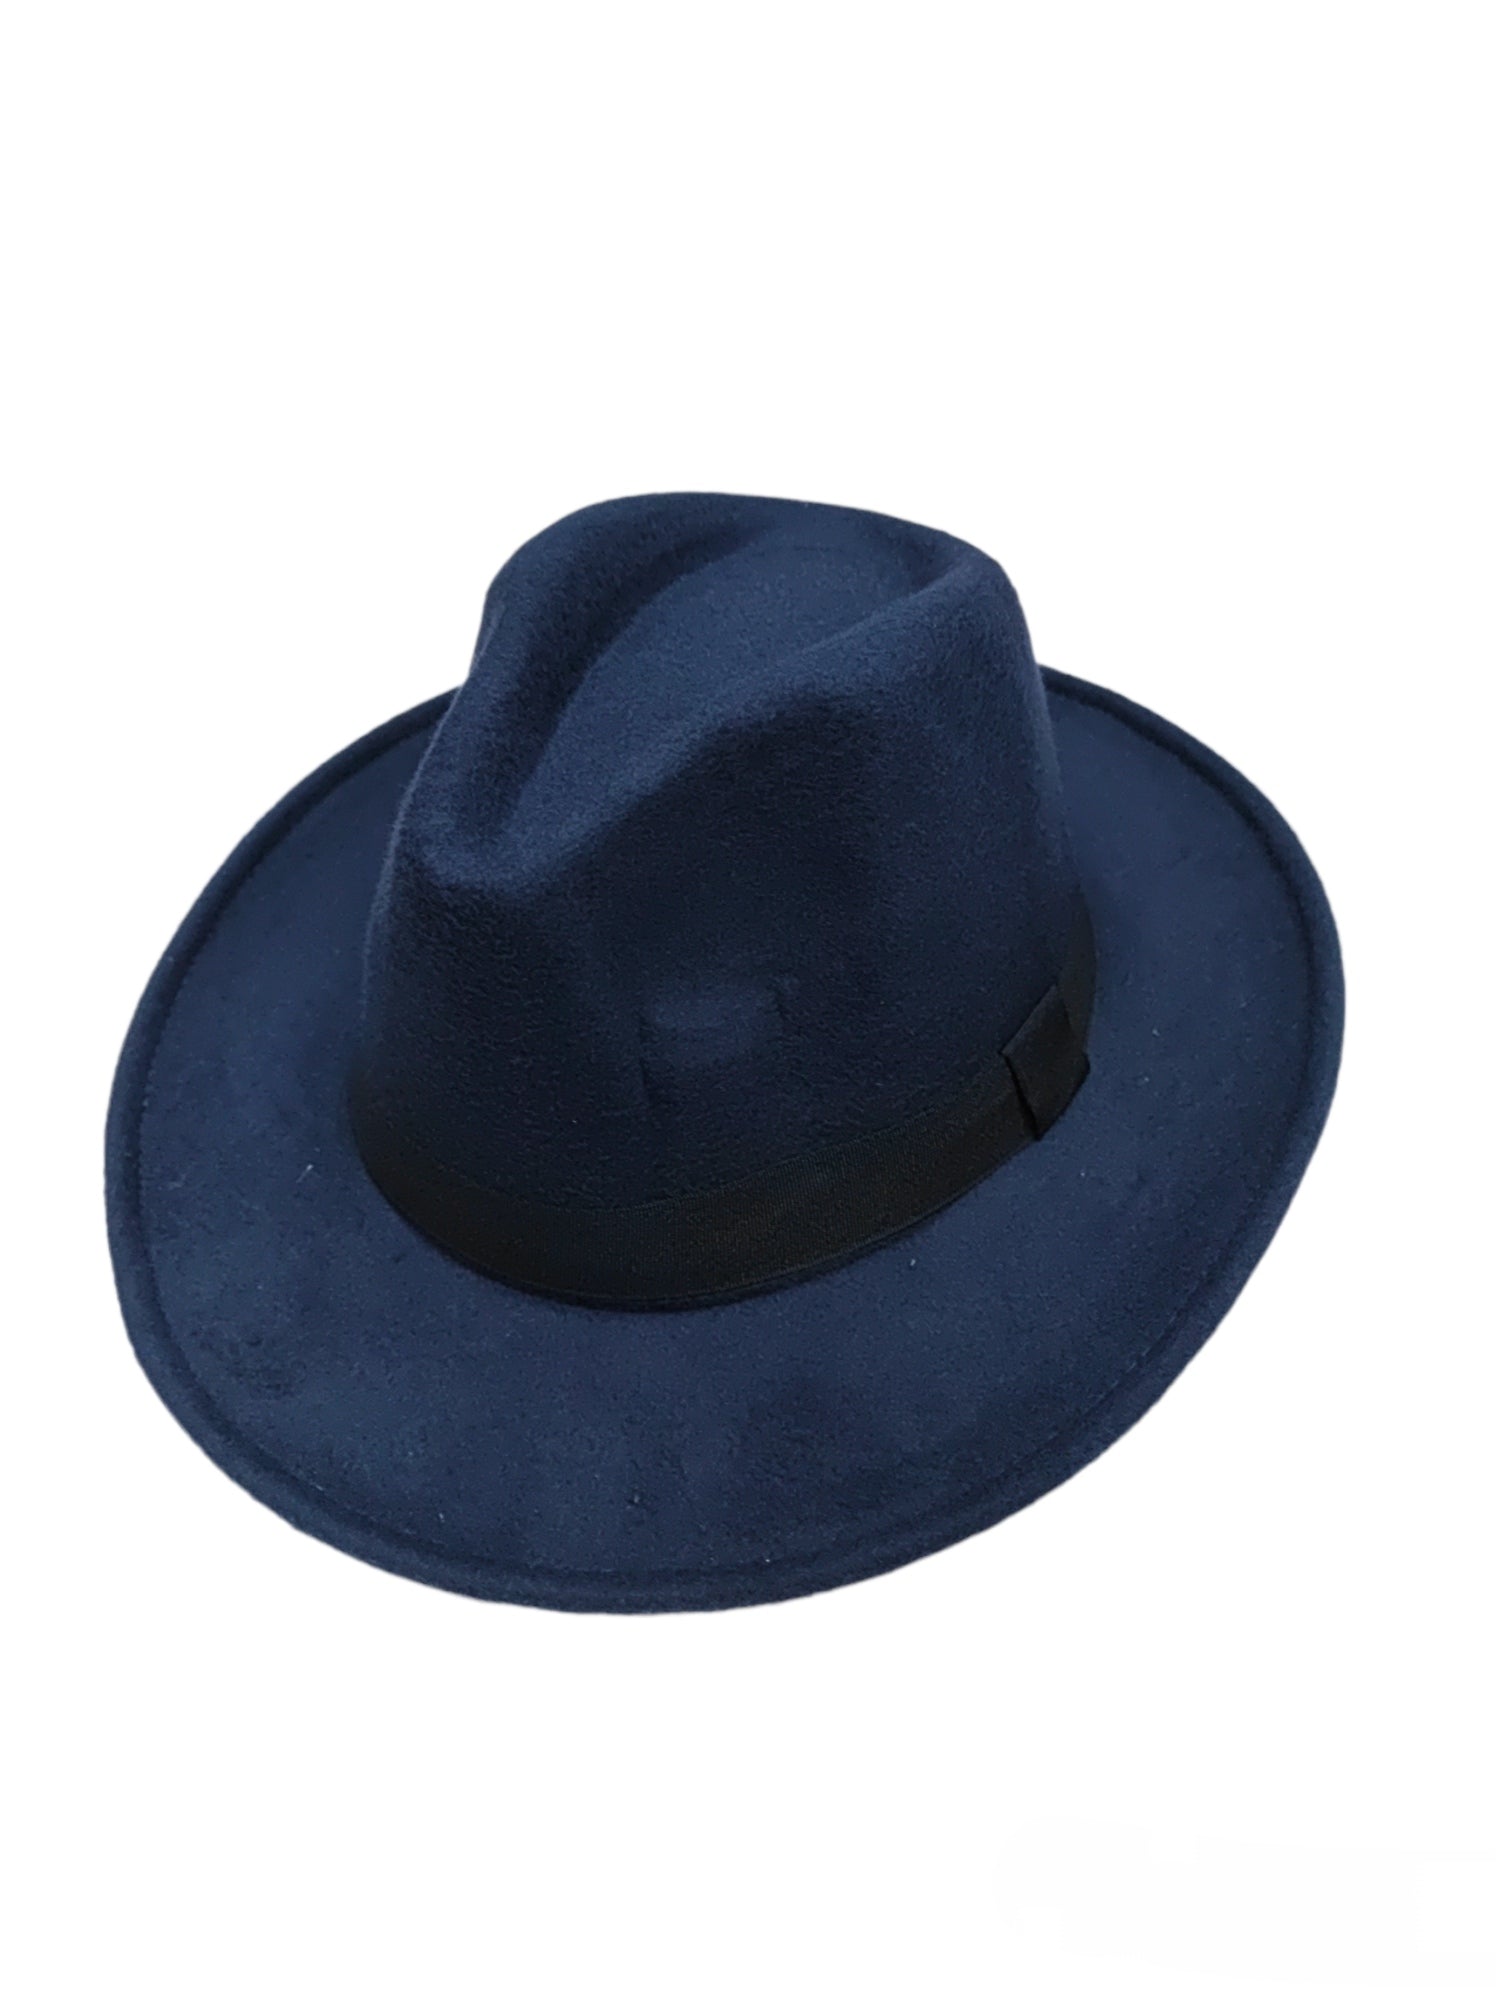 Chapeau simple bande noir (x6)